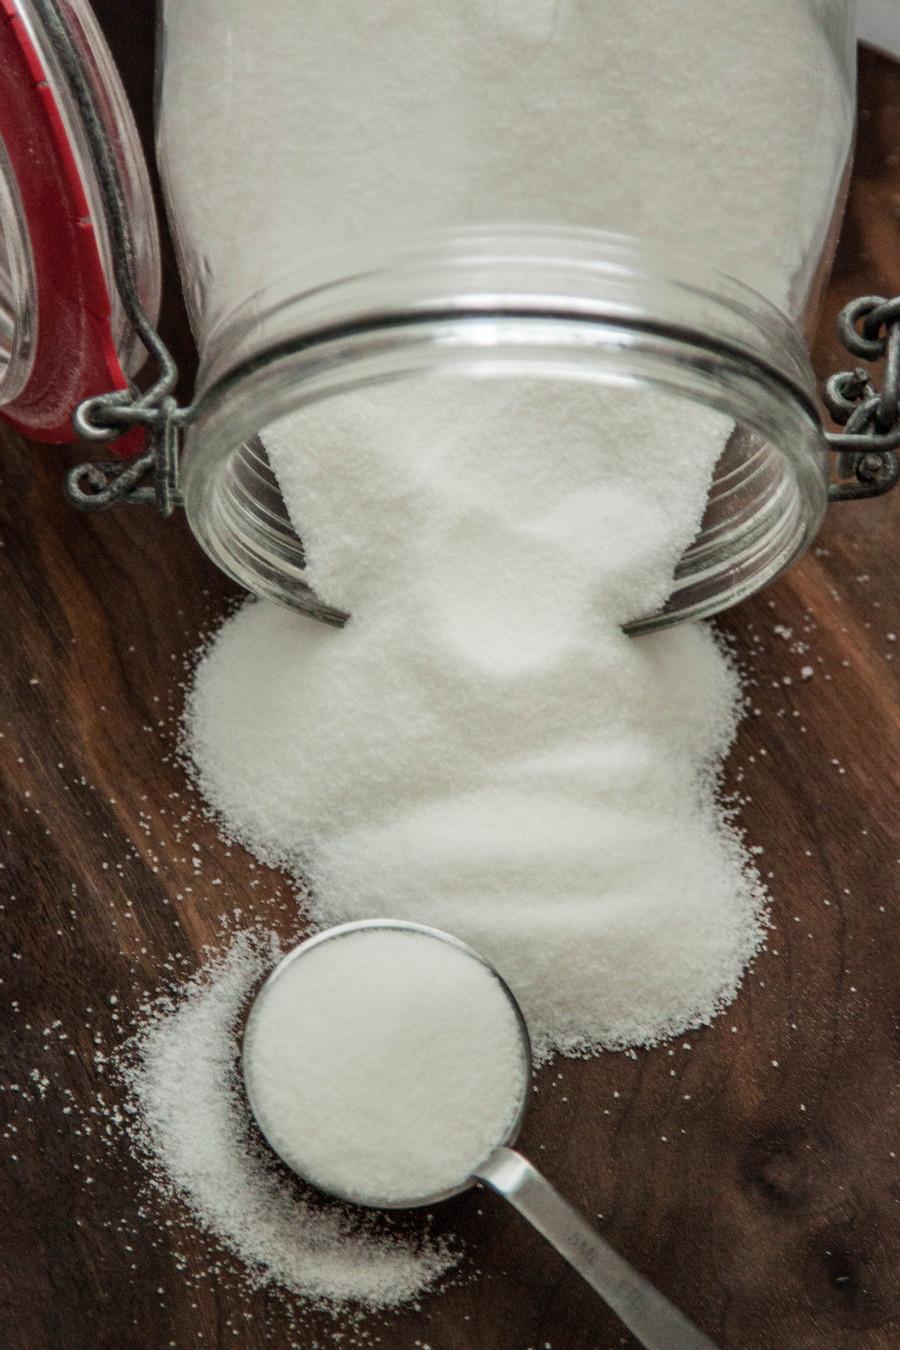 Sugar can help balance savory dishes